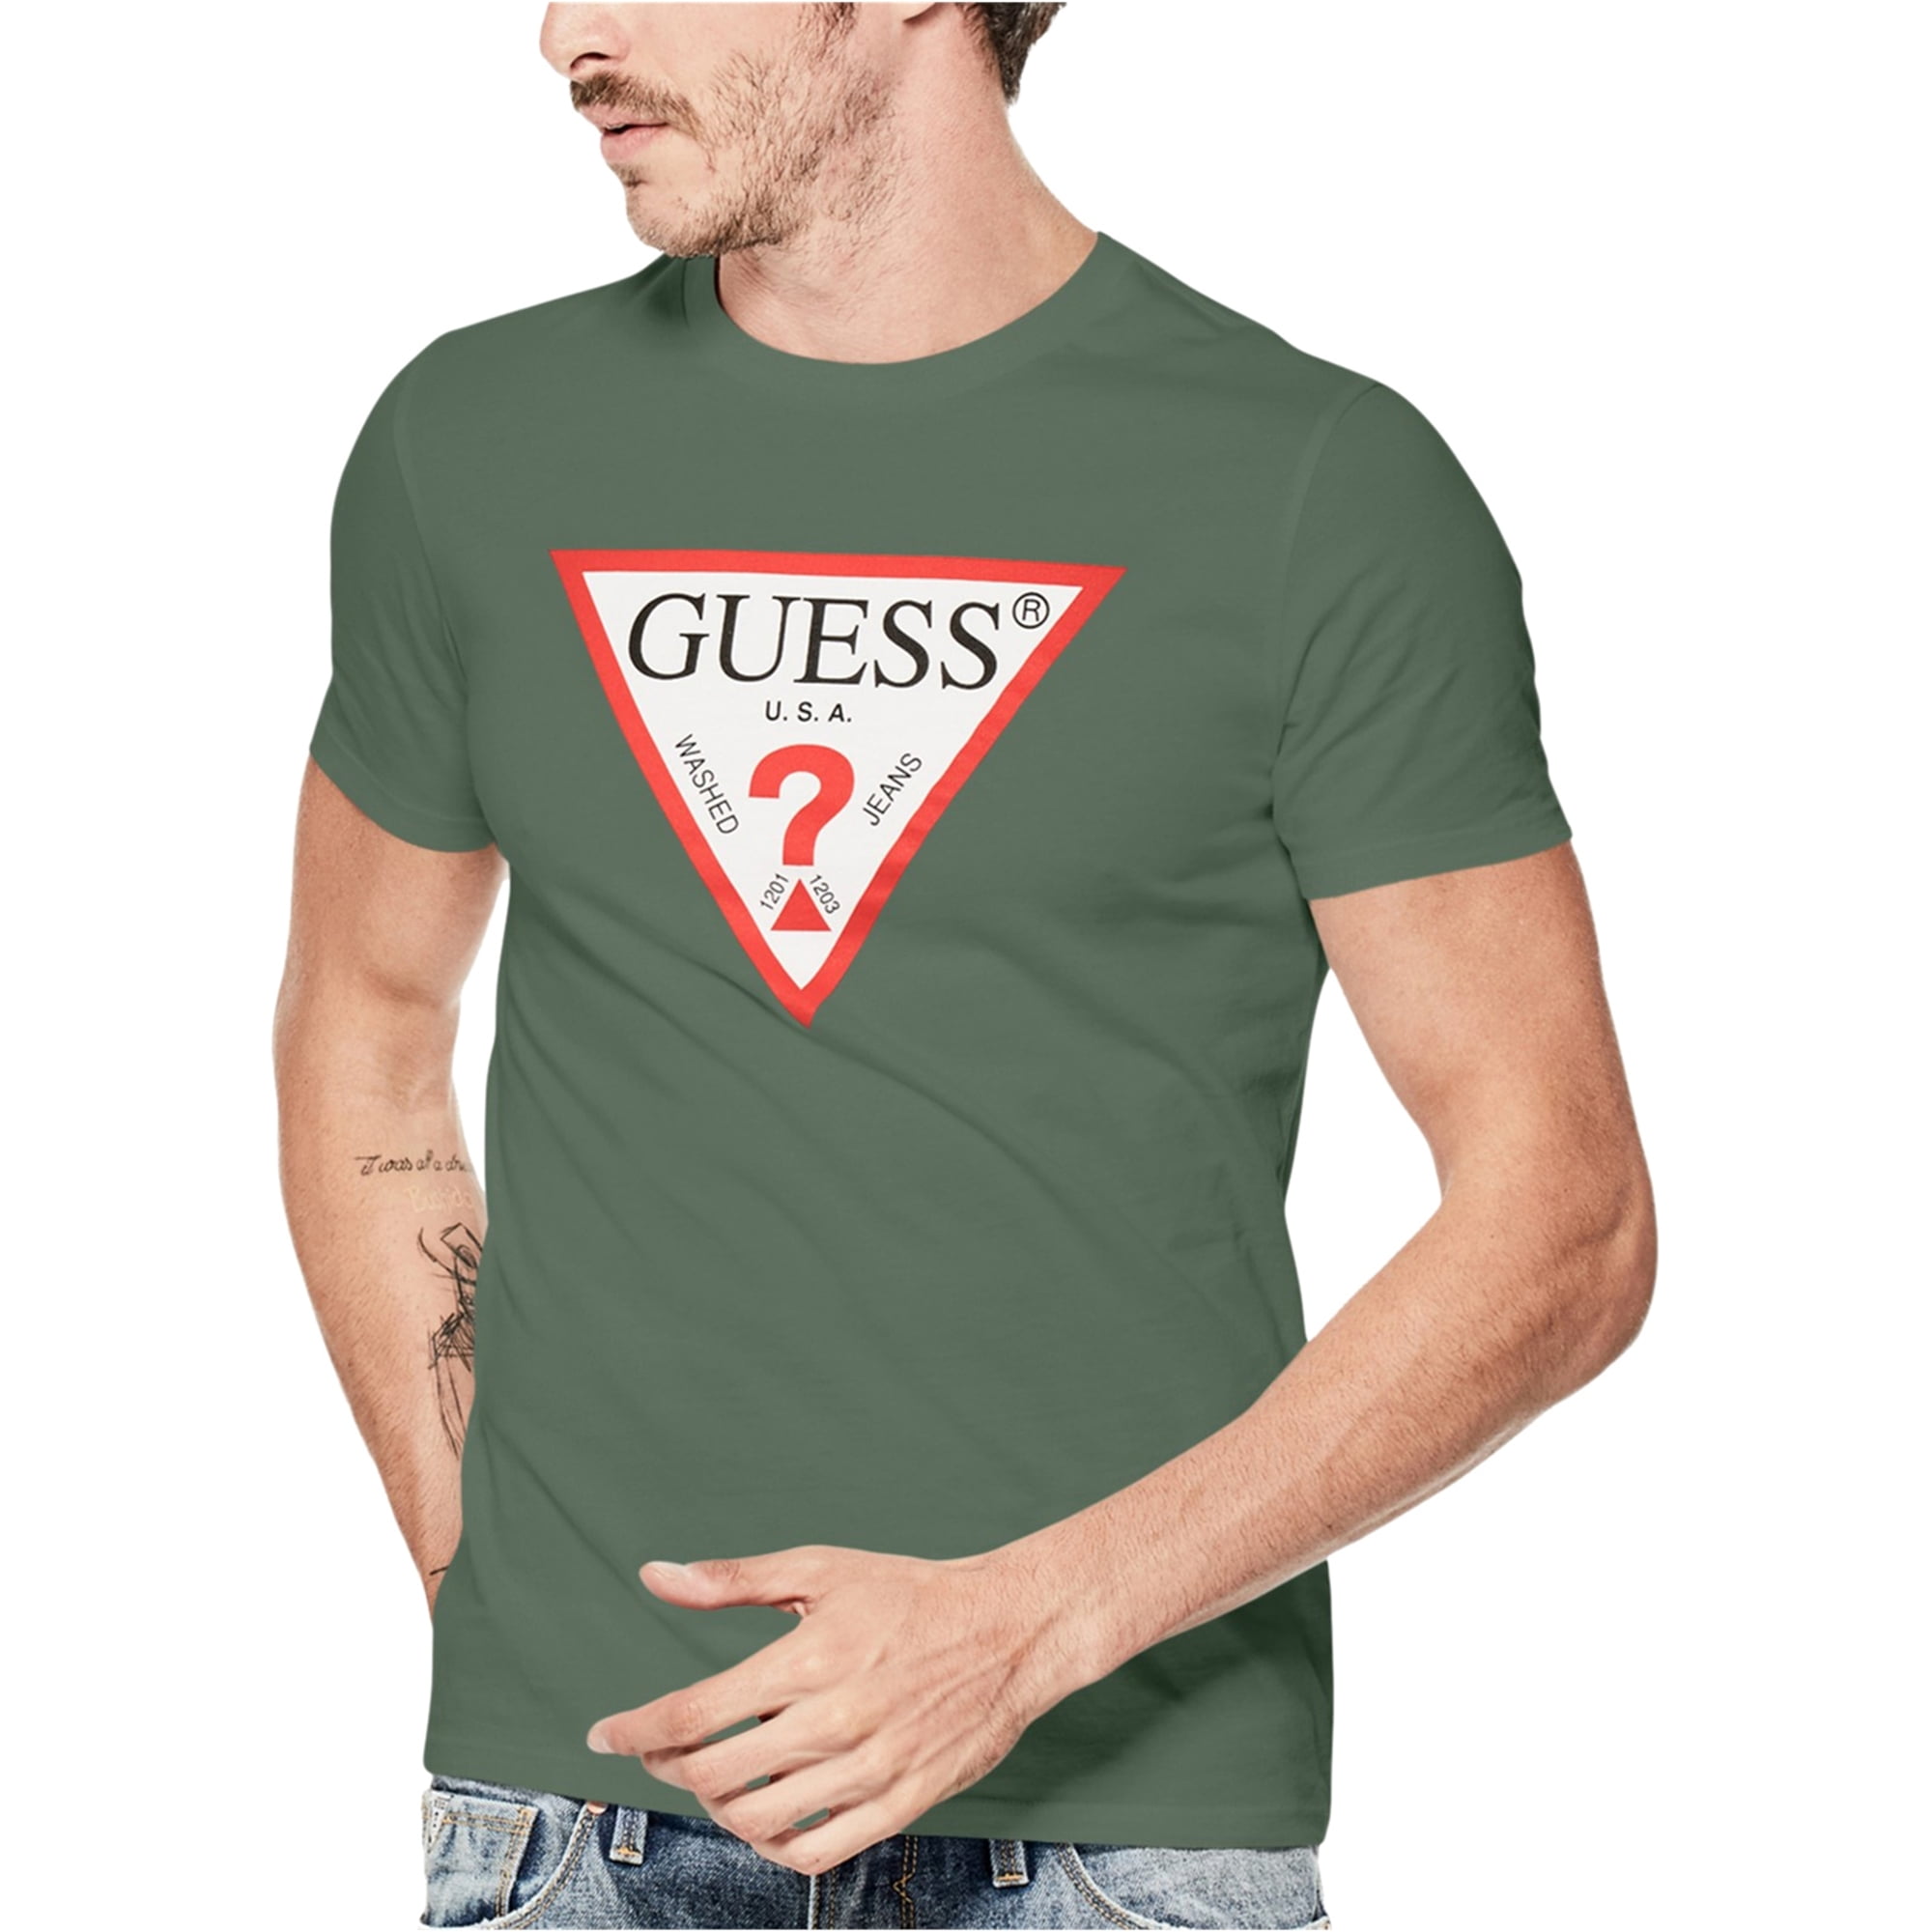 GUESS - Guess Mens Tri Logo Graphic T-Shirt - Walmart.com - Walmart.com